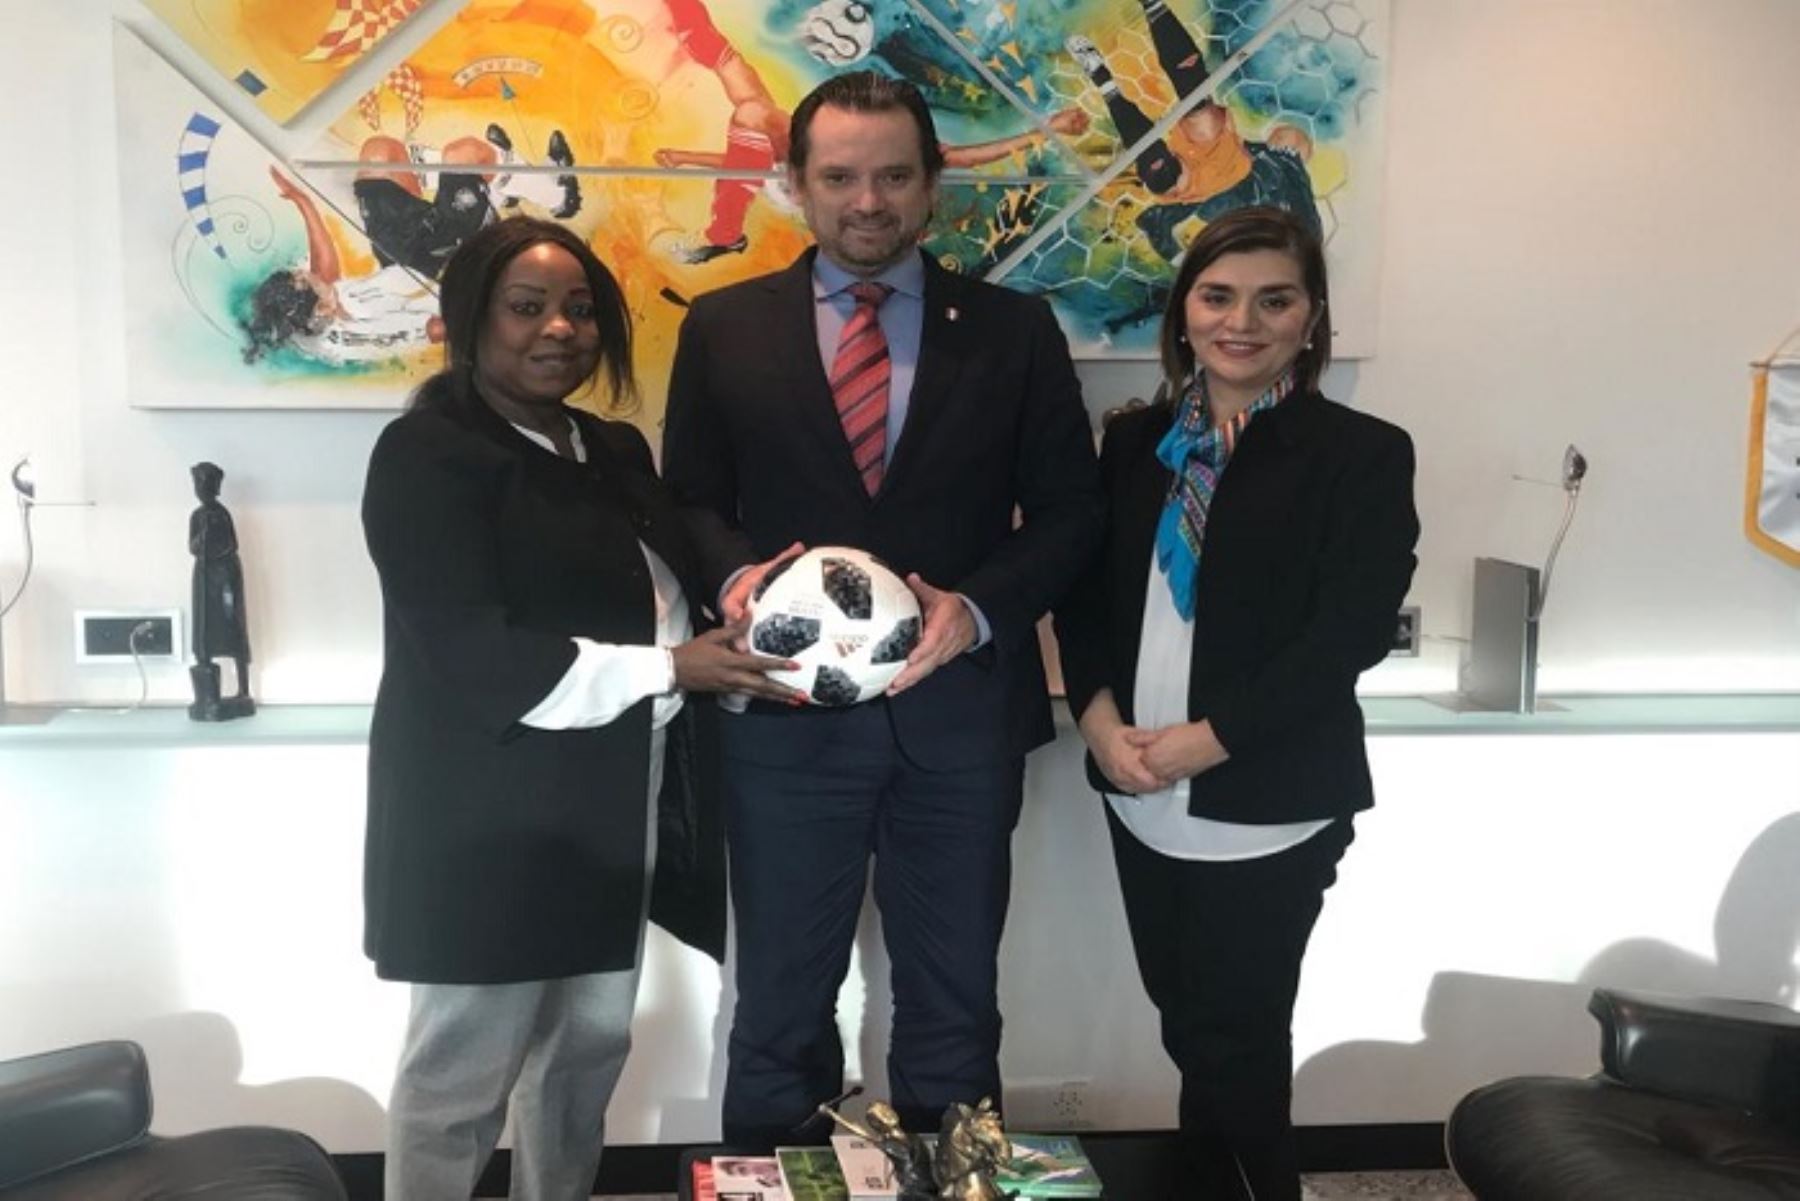 El secretario general de la Federación Peruana de Fútbol (FPF), Juan Matute, se reunió en Zurich con la secretaria general de la FIFA, Fatma Samoura, y la presidenta del Comité Organizador Local del Mundial Sub-17 Perú 2019, Mara Seminario, con el objetivo de confirmar la realización del certamen en el Perú.